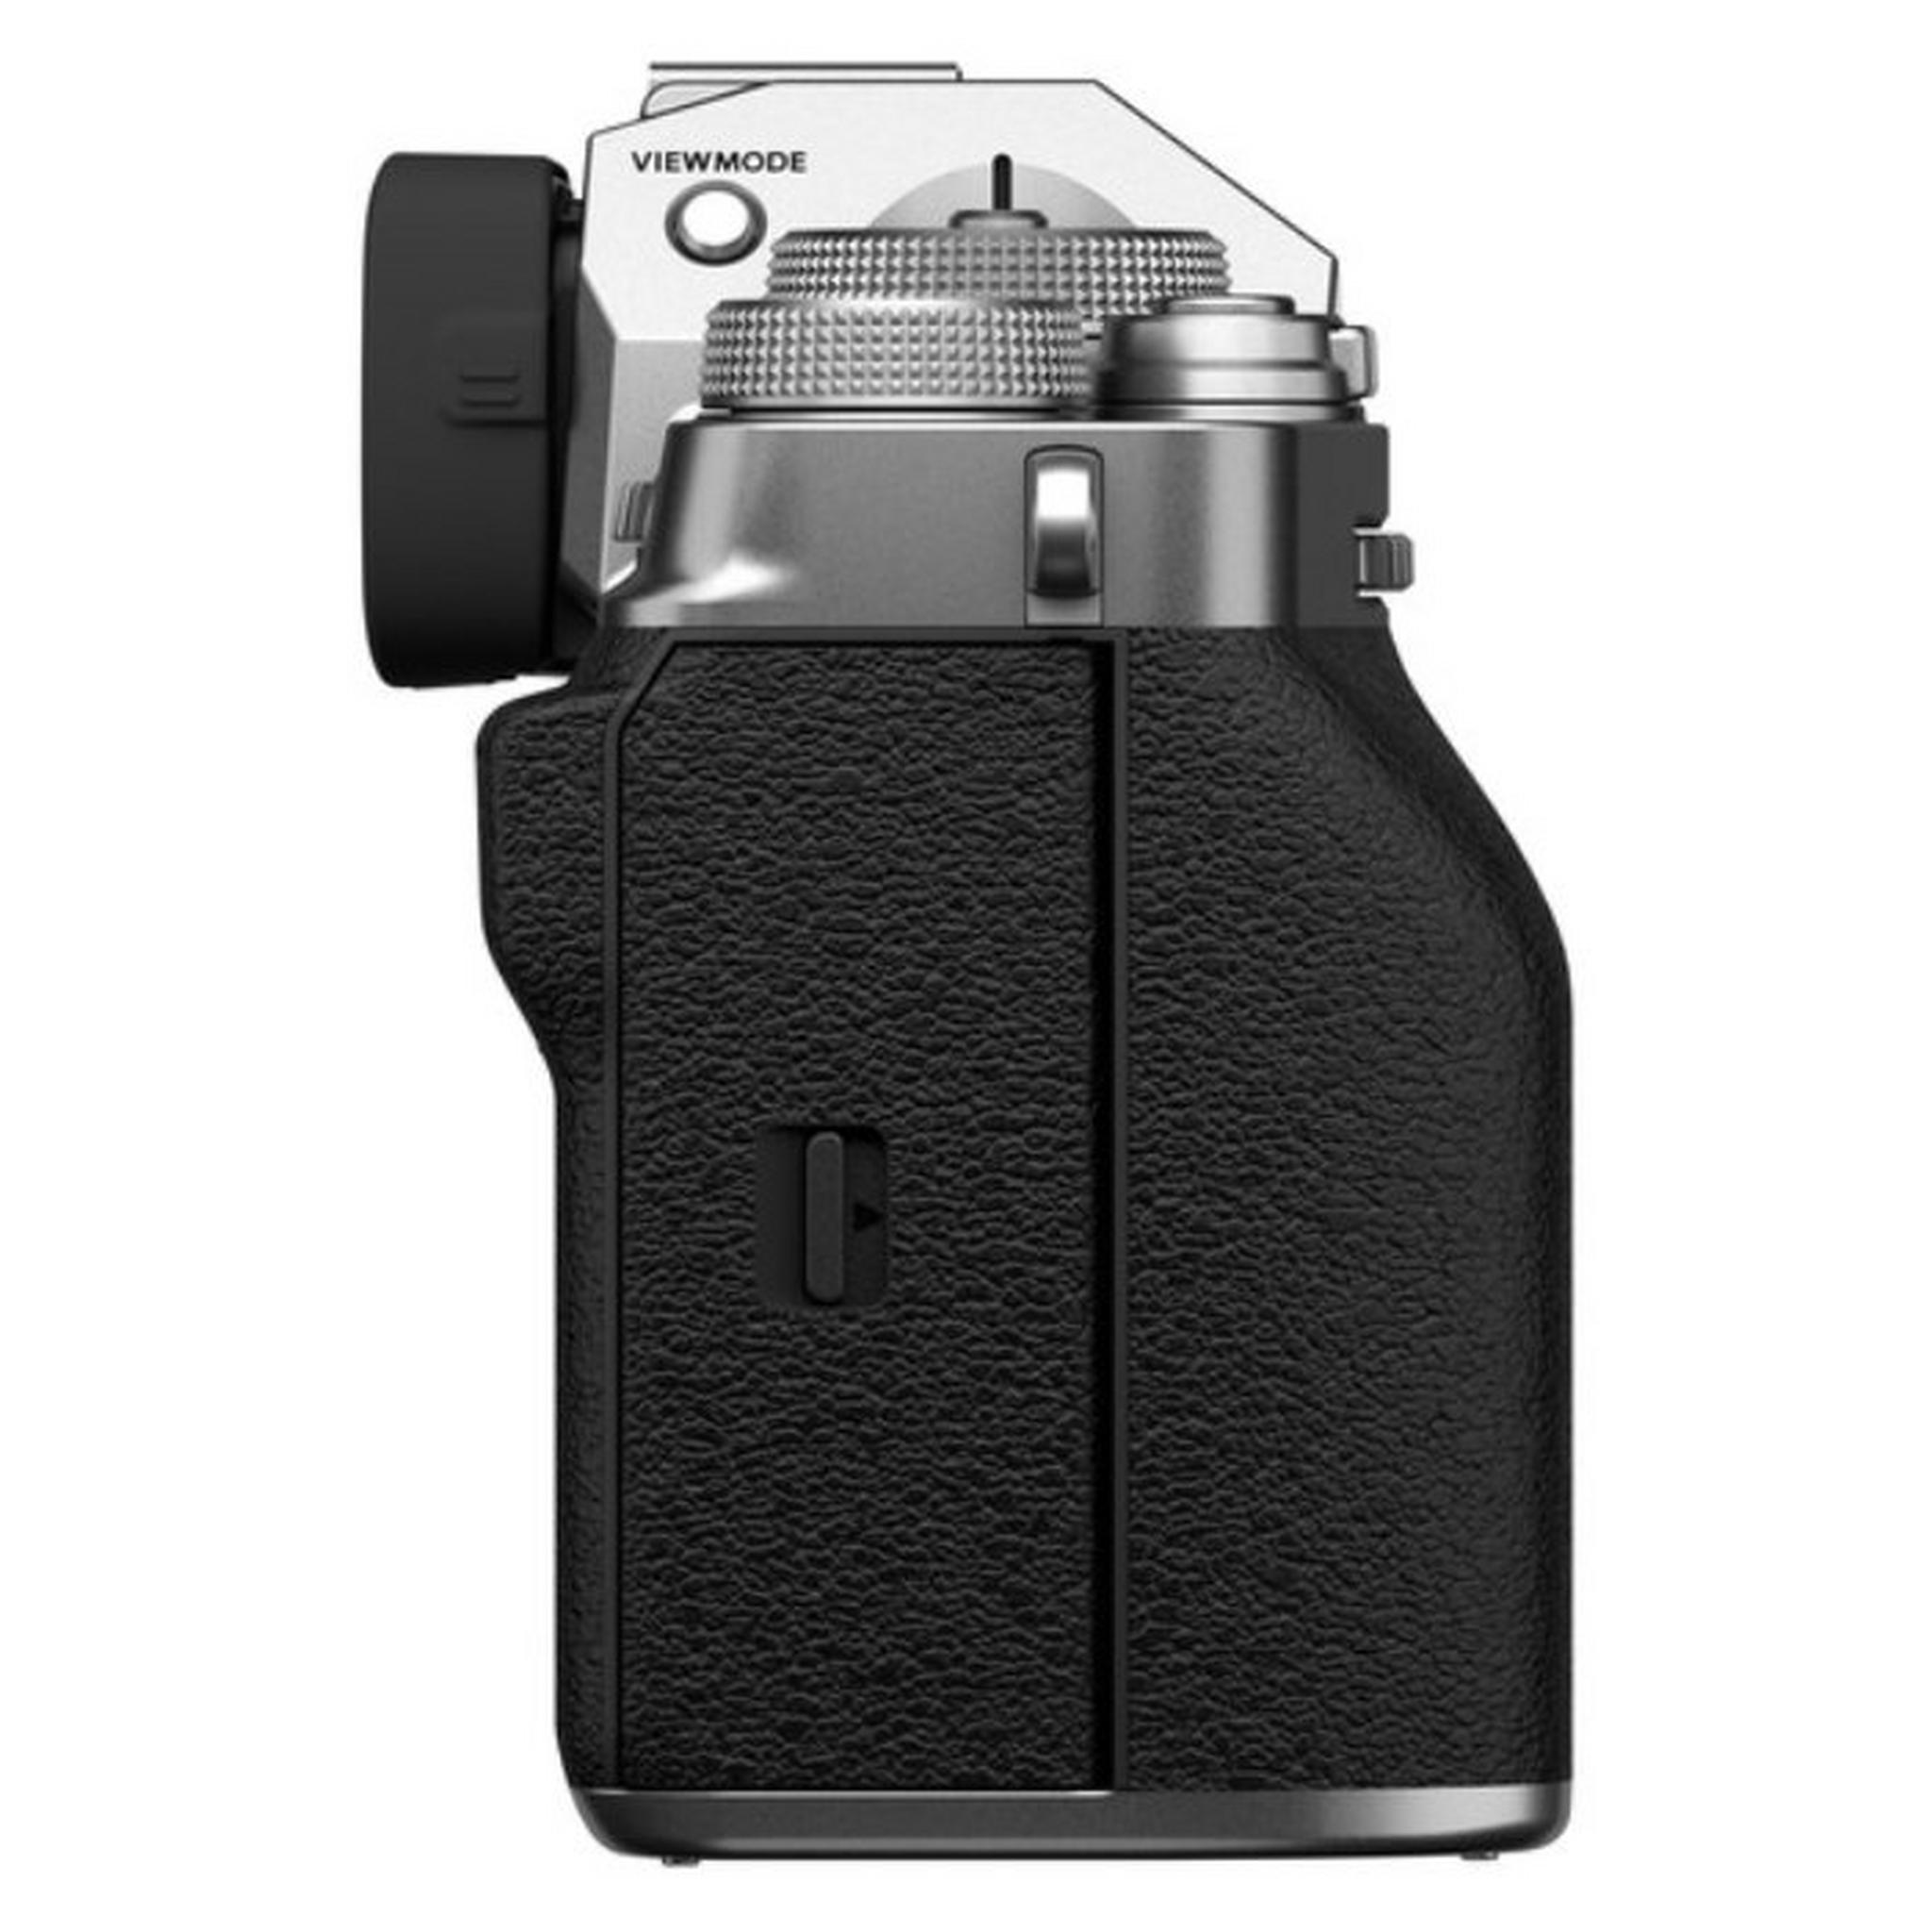 كاميرا فوجي فيلم X-T4 ديجيتال بدون مرآة مع عدسة 18-55 ملم - فضي